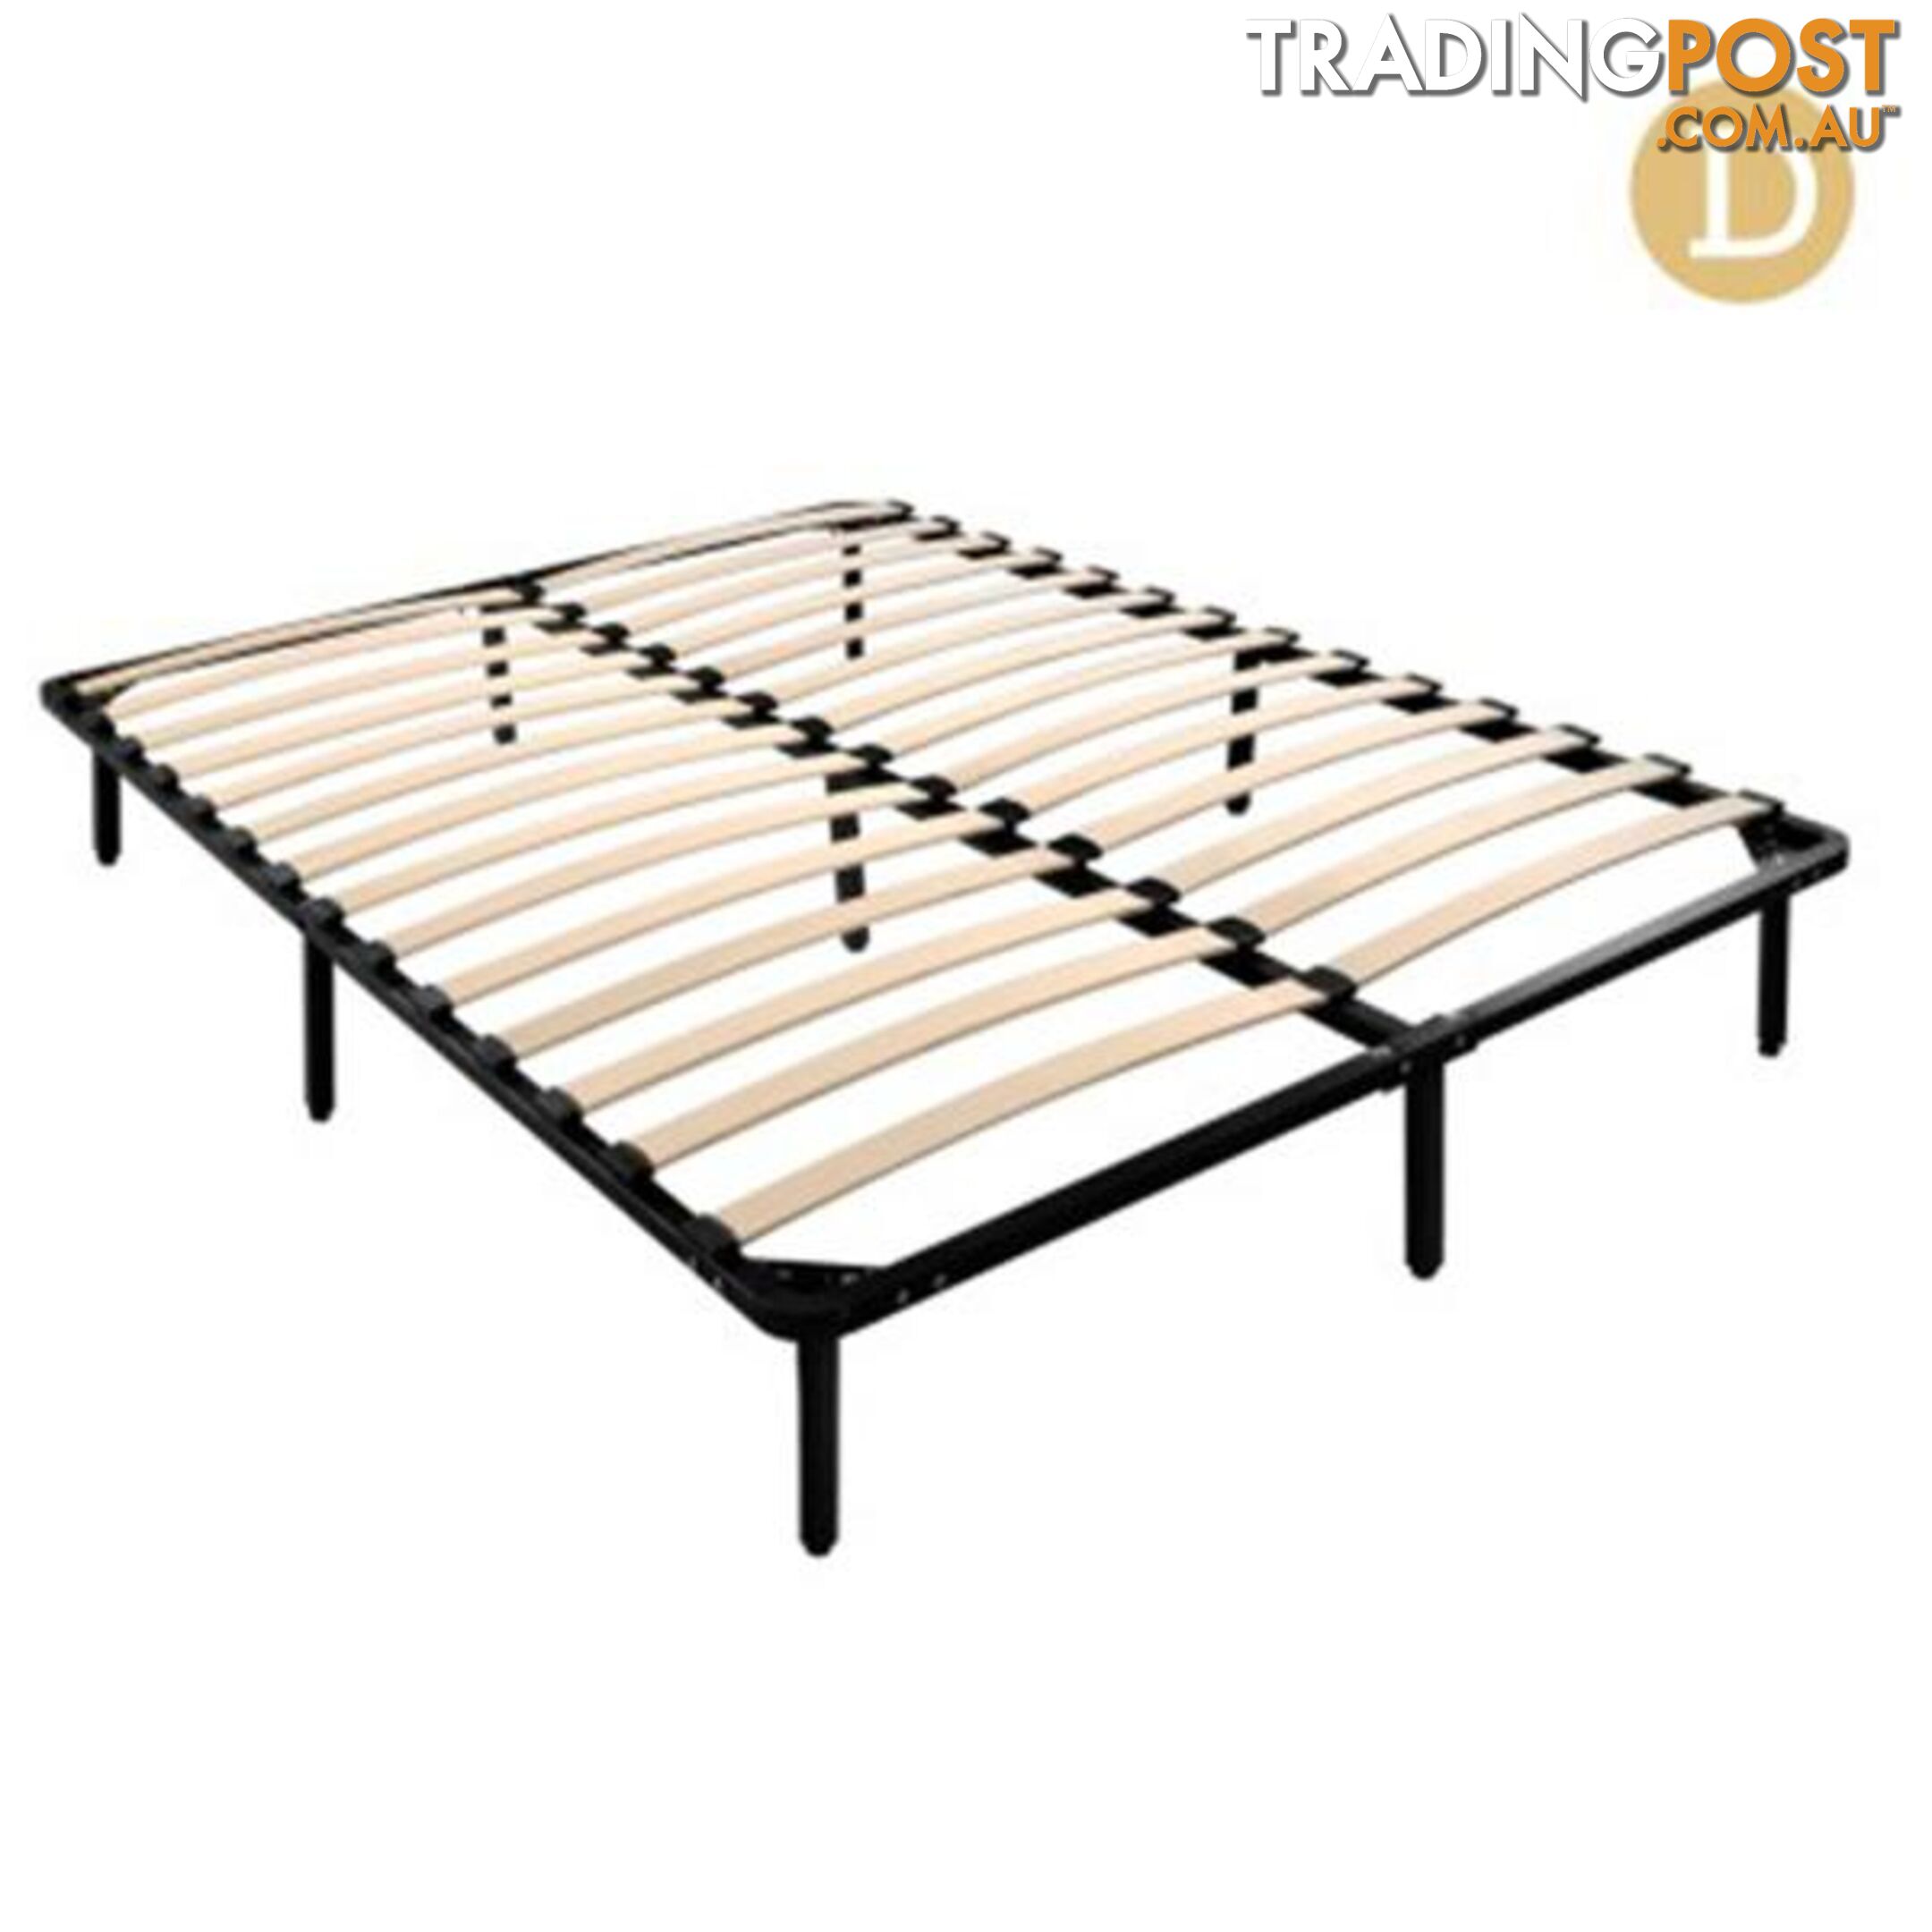 Metal Bed Base Frame - Black - Artiss - 4326500249388